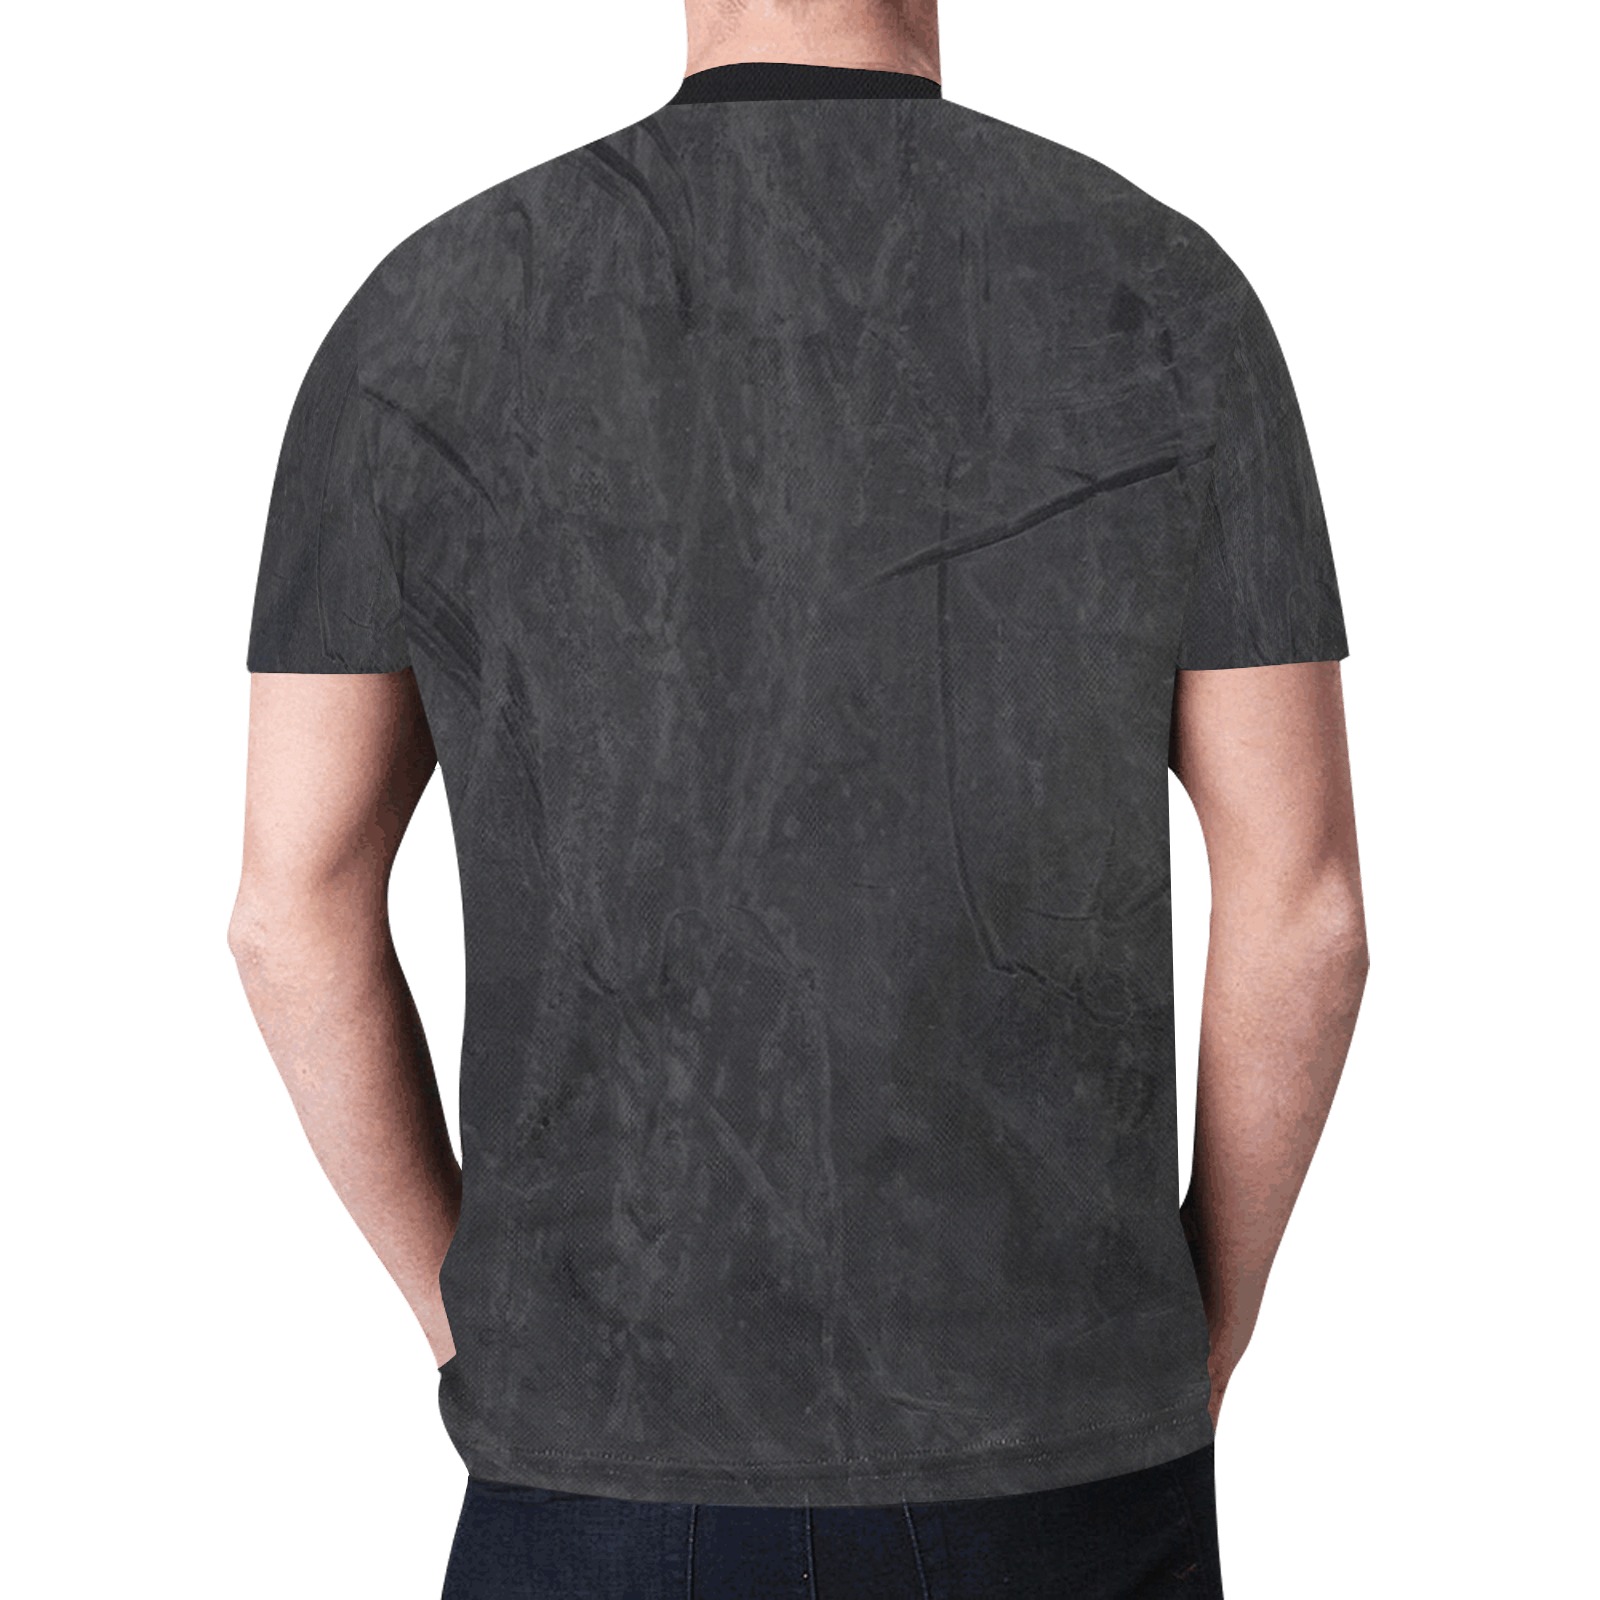 Folsom berlin by Fetishworld New All Over Print T-shirt for Men (Model T45)